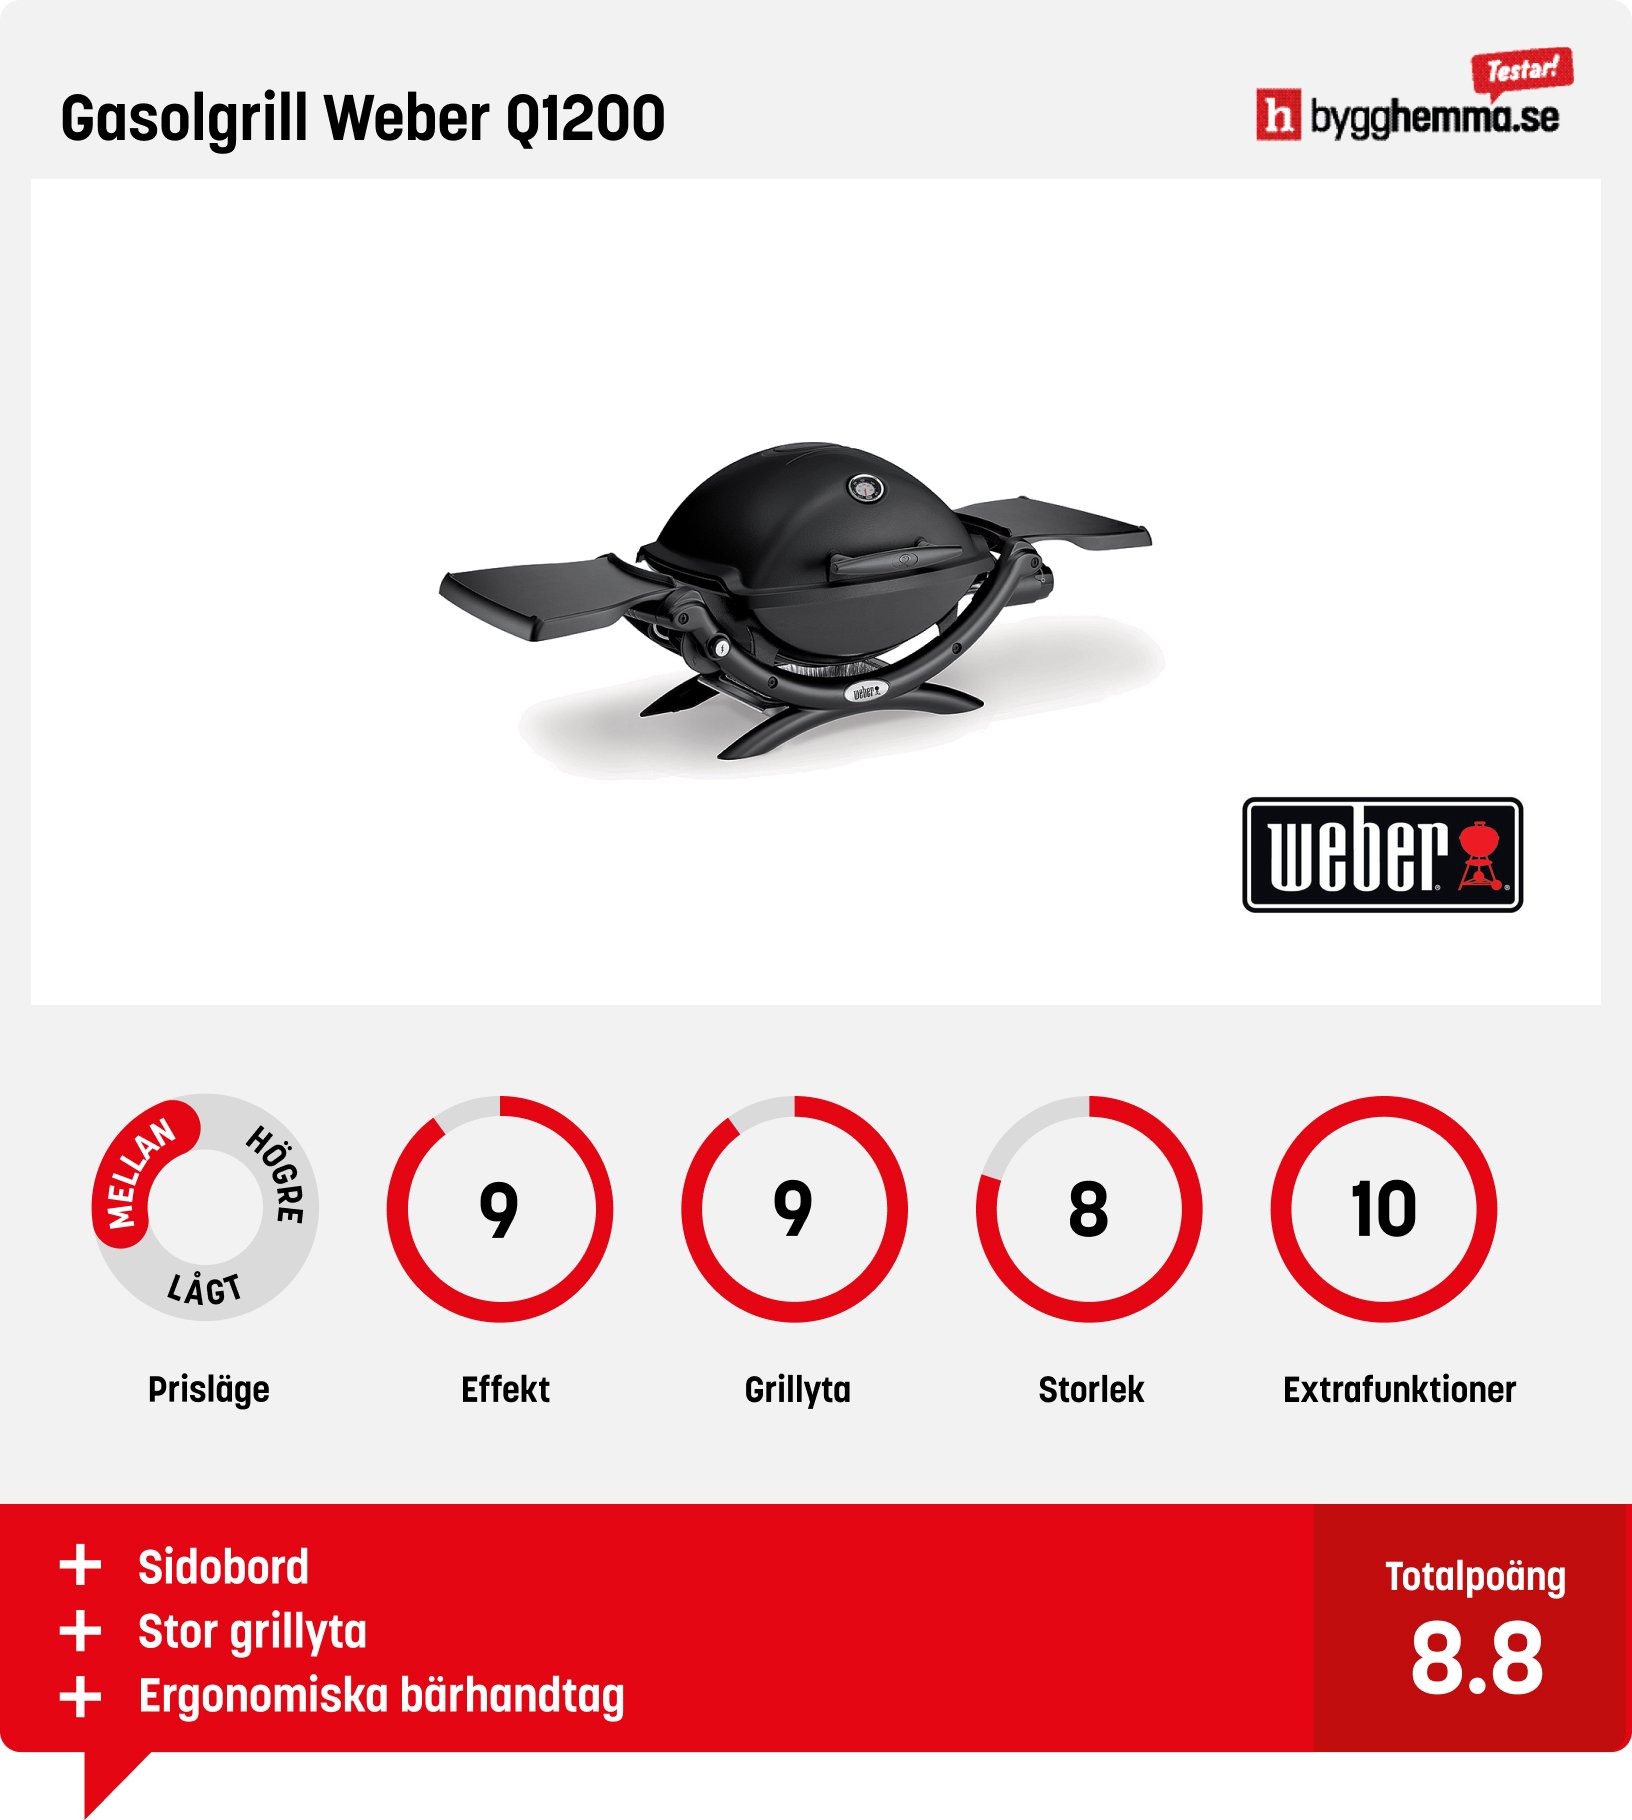 Liten gasolgrill bäst i test - Gasolgrill Weber Q1200